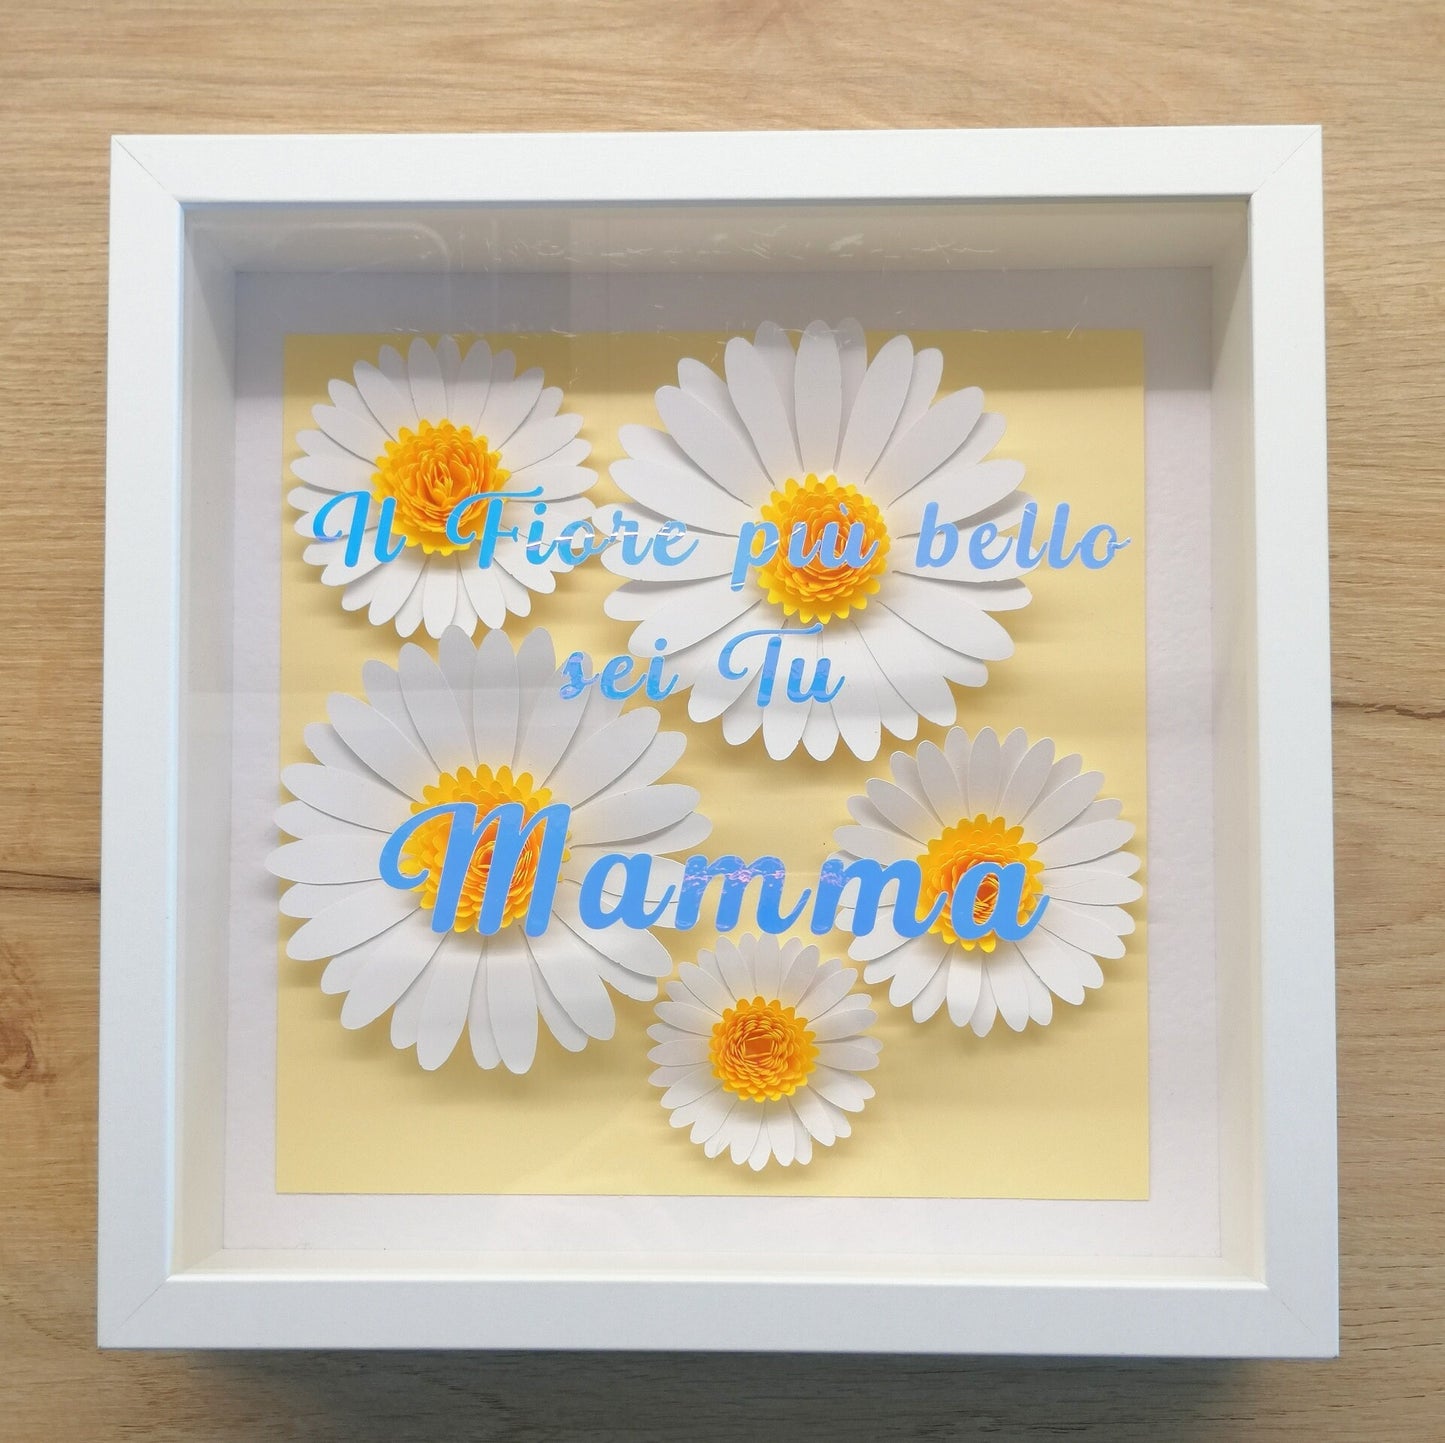 Quadretto idea regalo Cornice FESTA DELLA MAMMA 25cm x 25cm flower shadow box margherite / Mother's Day